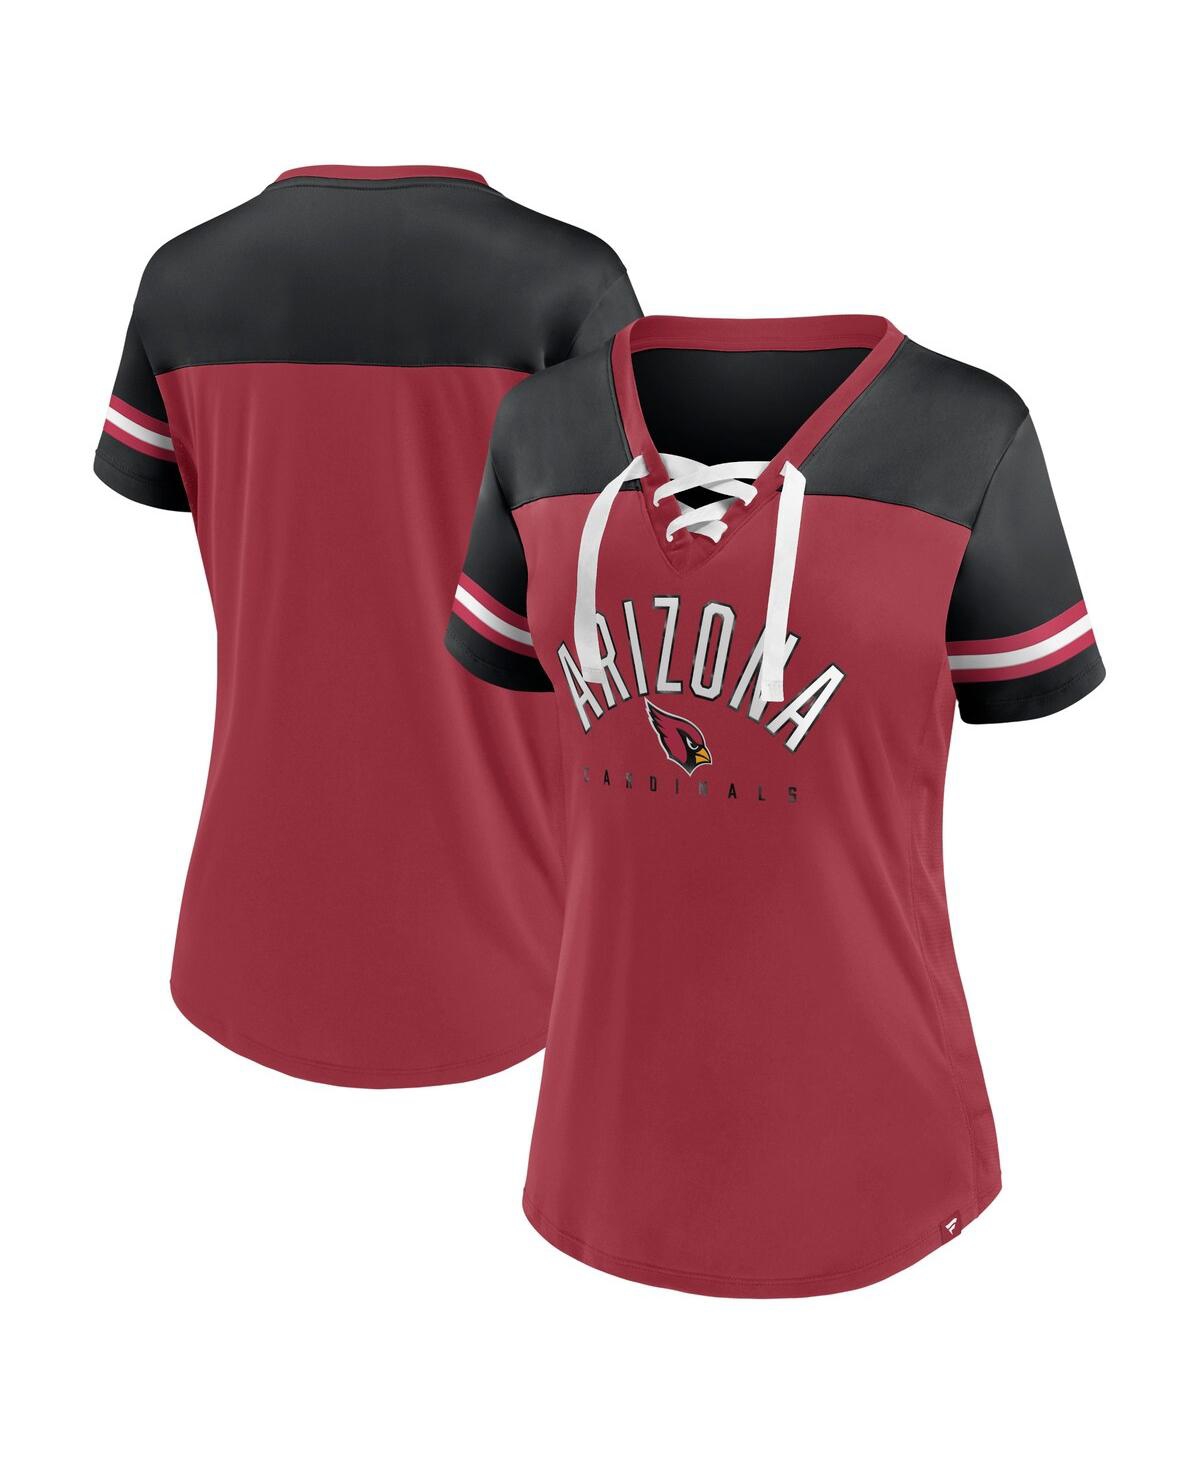 Women's Fanatics Cardinal, Black Arizona Cardinals Blitz and Glam Lace-Up V-Neck Jersey T-shirt - Cardinal, Black